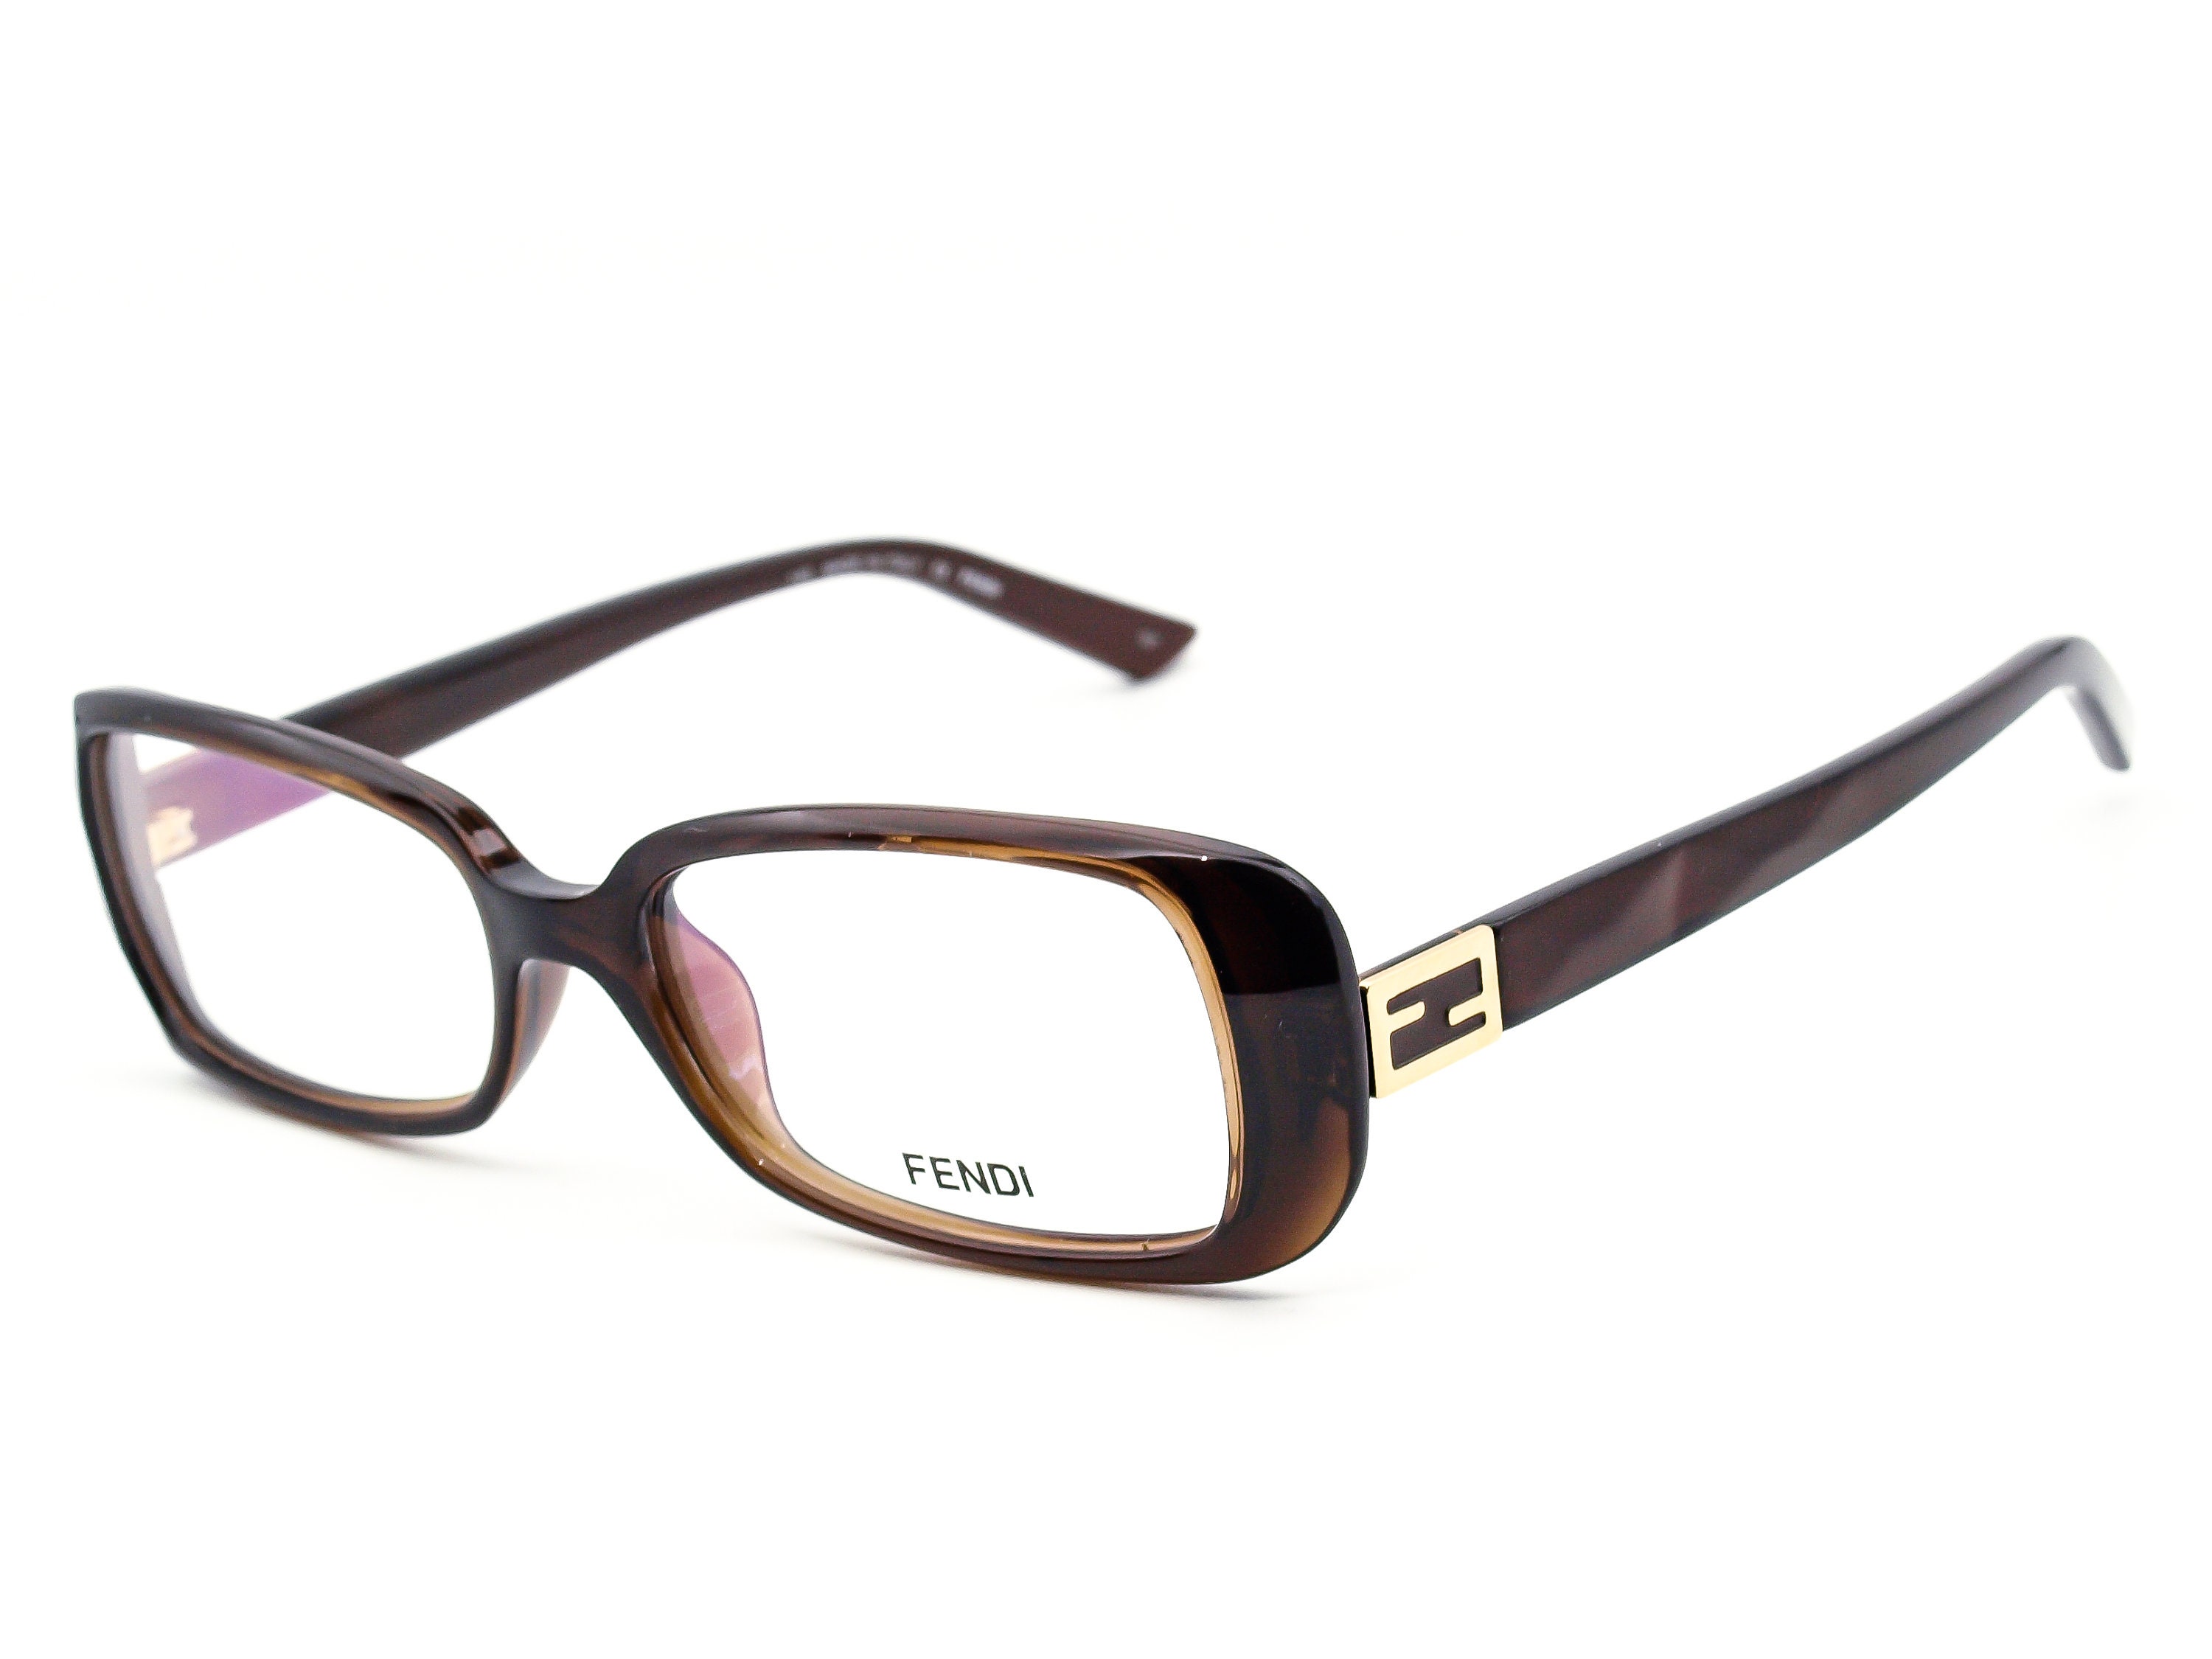 Fendi Women's Eyeglasses F898 209 Brown Rectangular Frame | Etsy